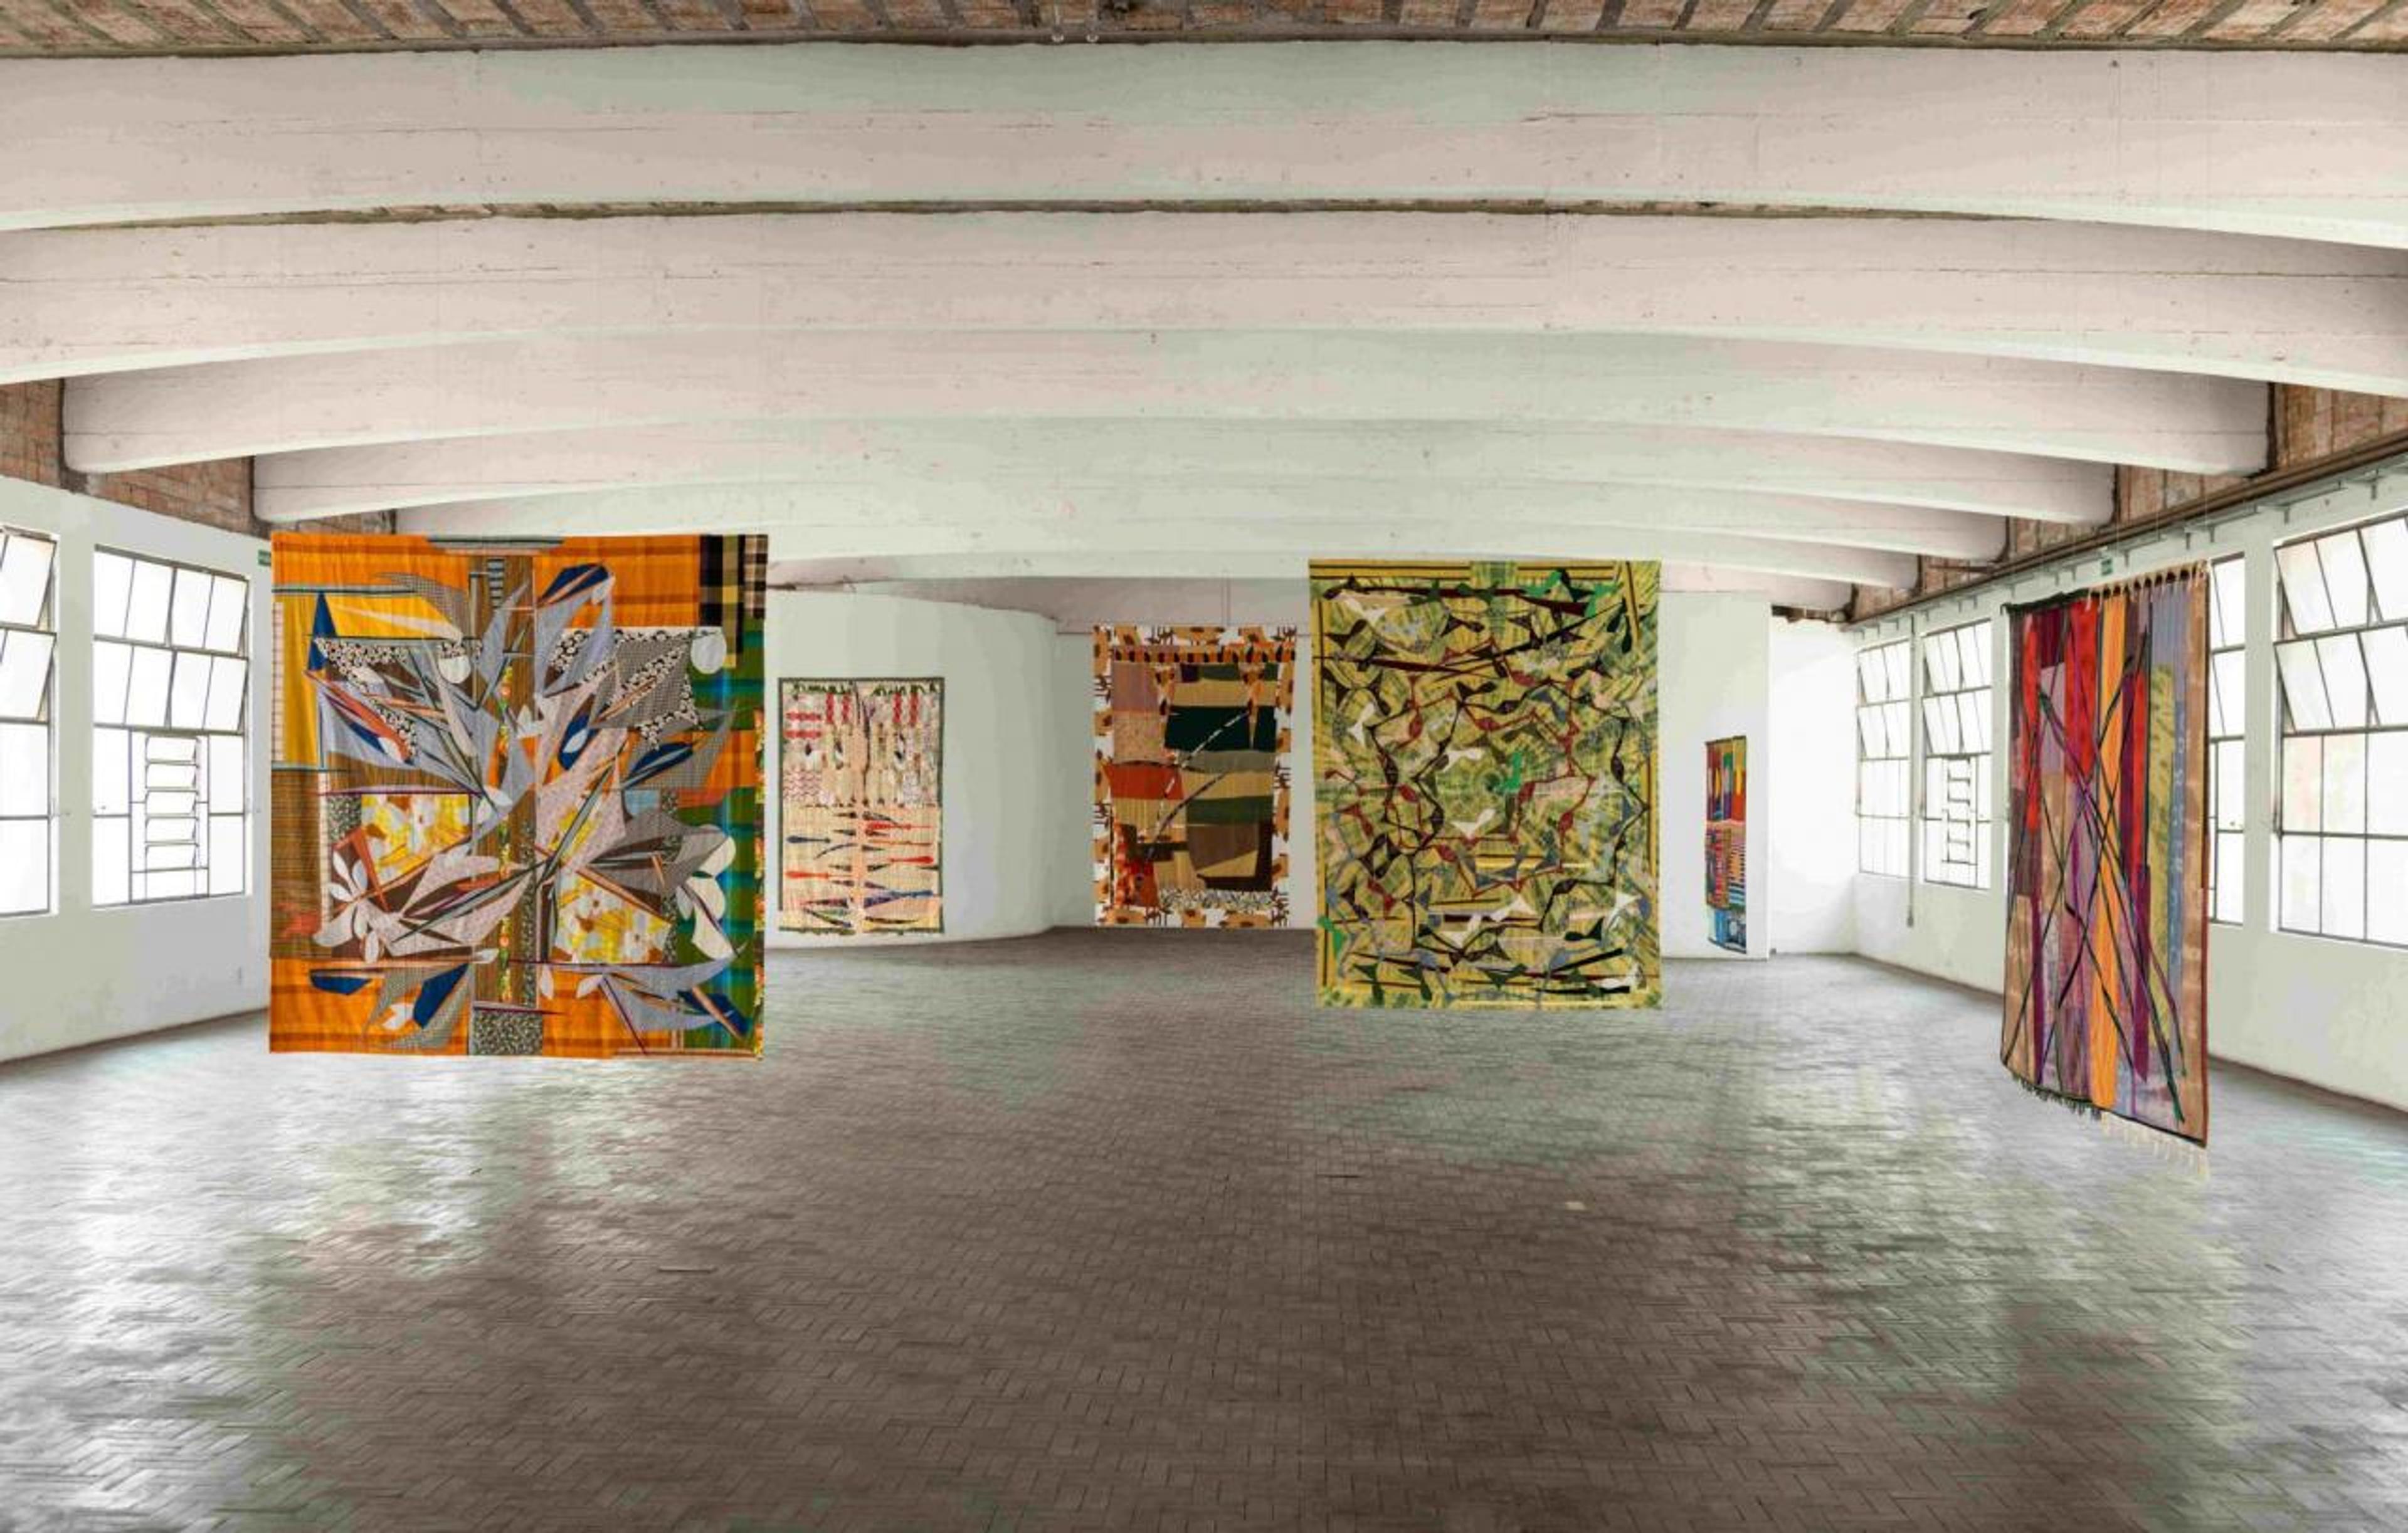 Noa Eshkol, "Corpo coletivo" at Casa do Pôvo. 34th Bienal de São Paulo. Edouard Fraipont